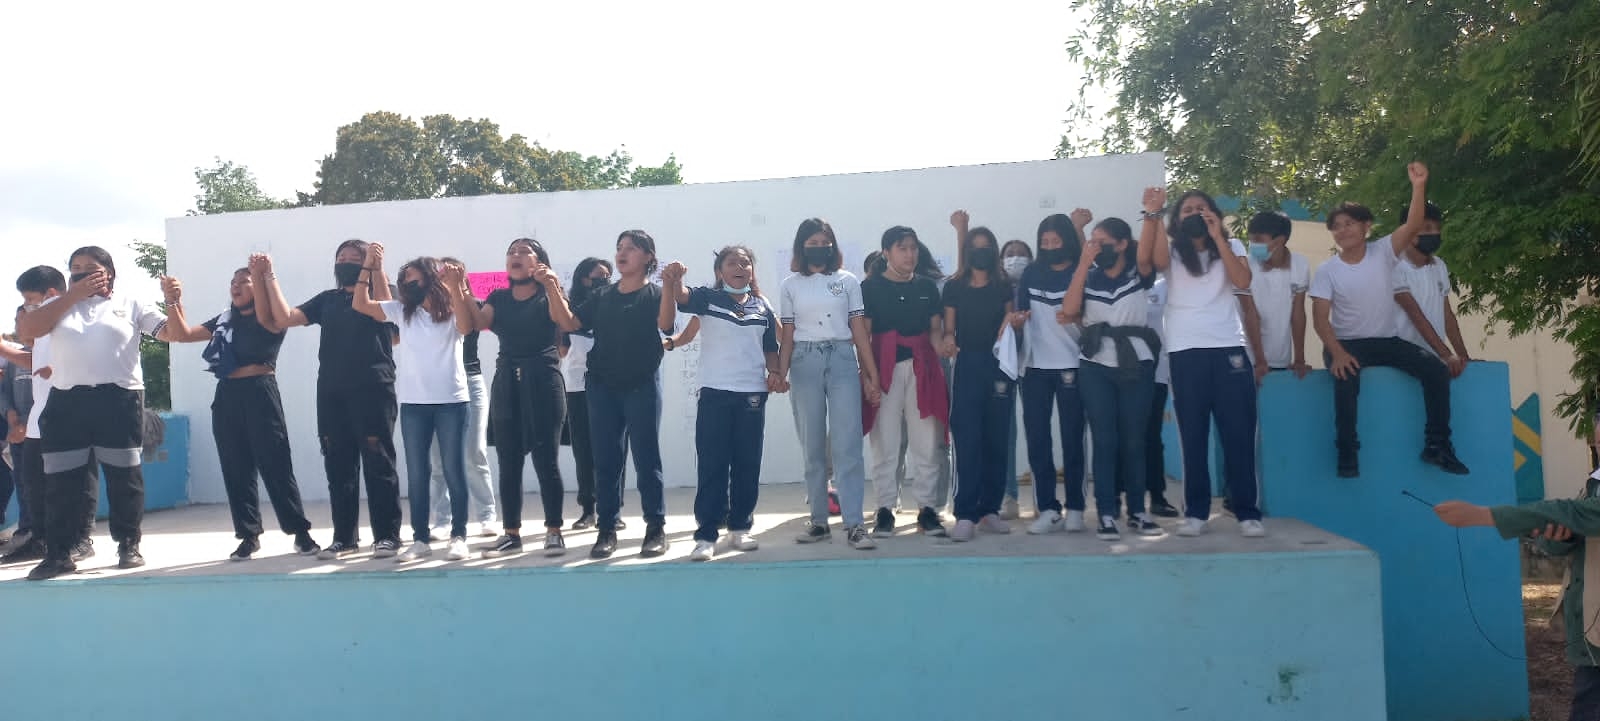 Alumnos se manifiestan en Playa del Carmen contra maestro acusado de abuso sexual: VIDEO